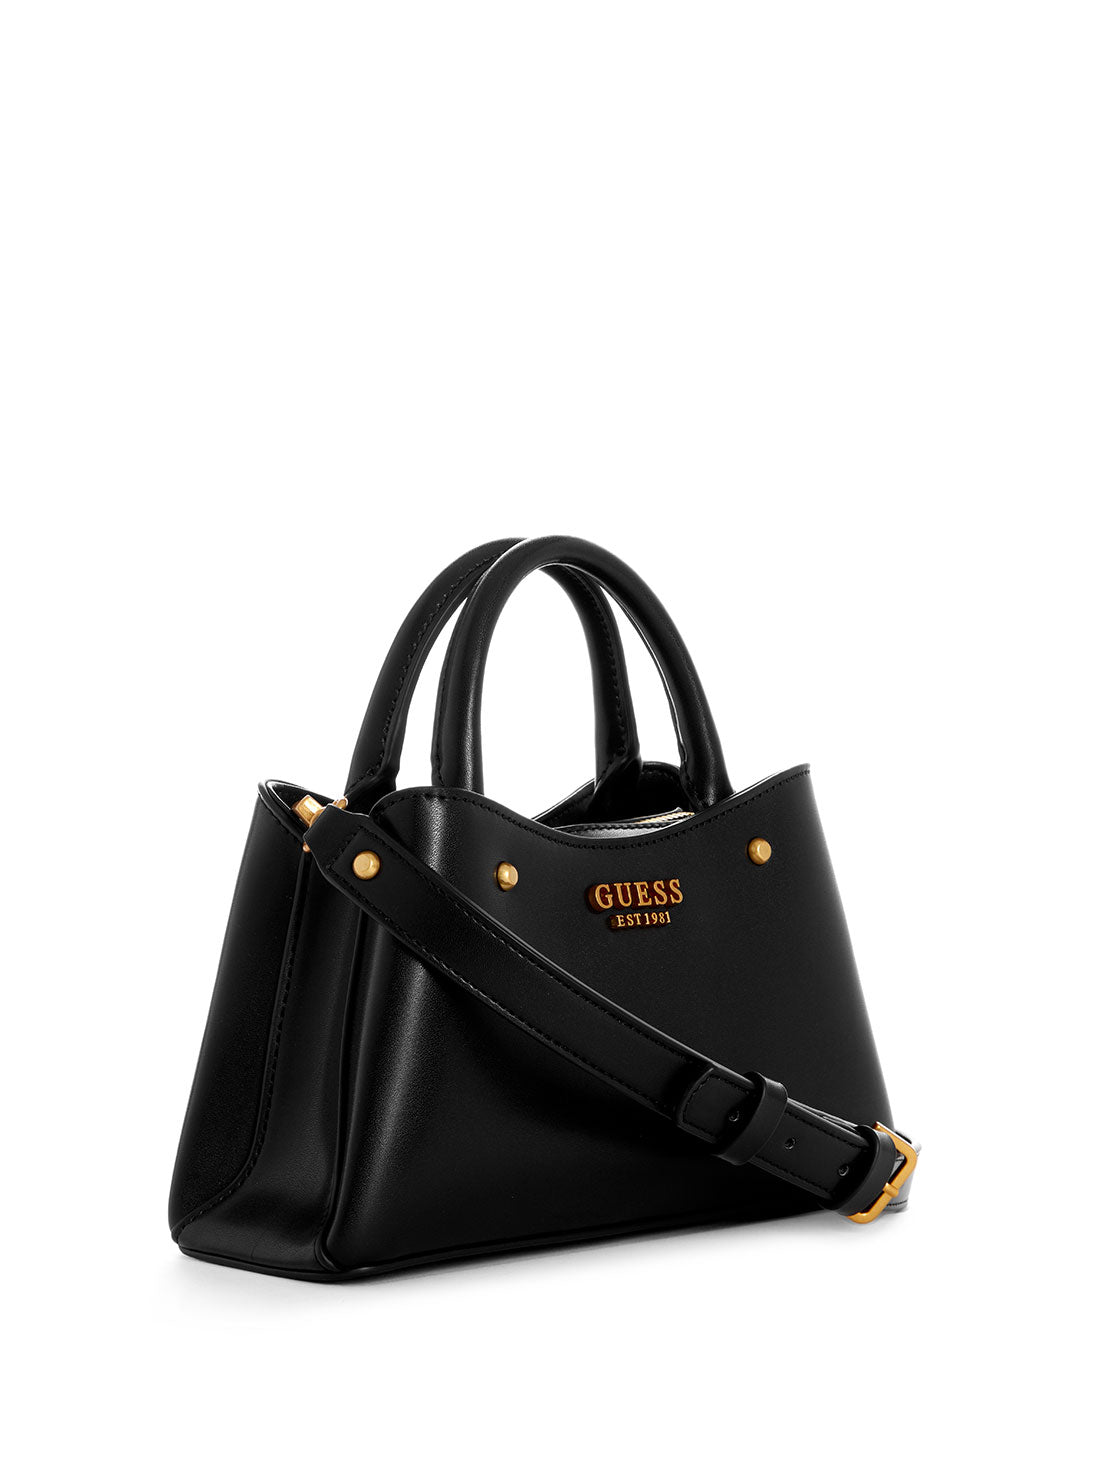 GUESS Black Sarita Mini Satchel Bag side view